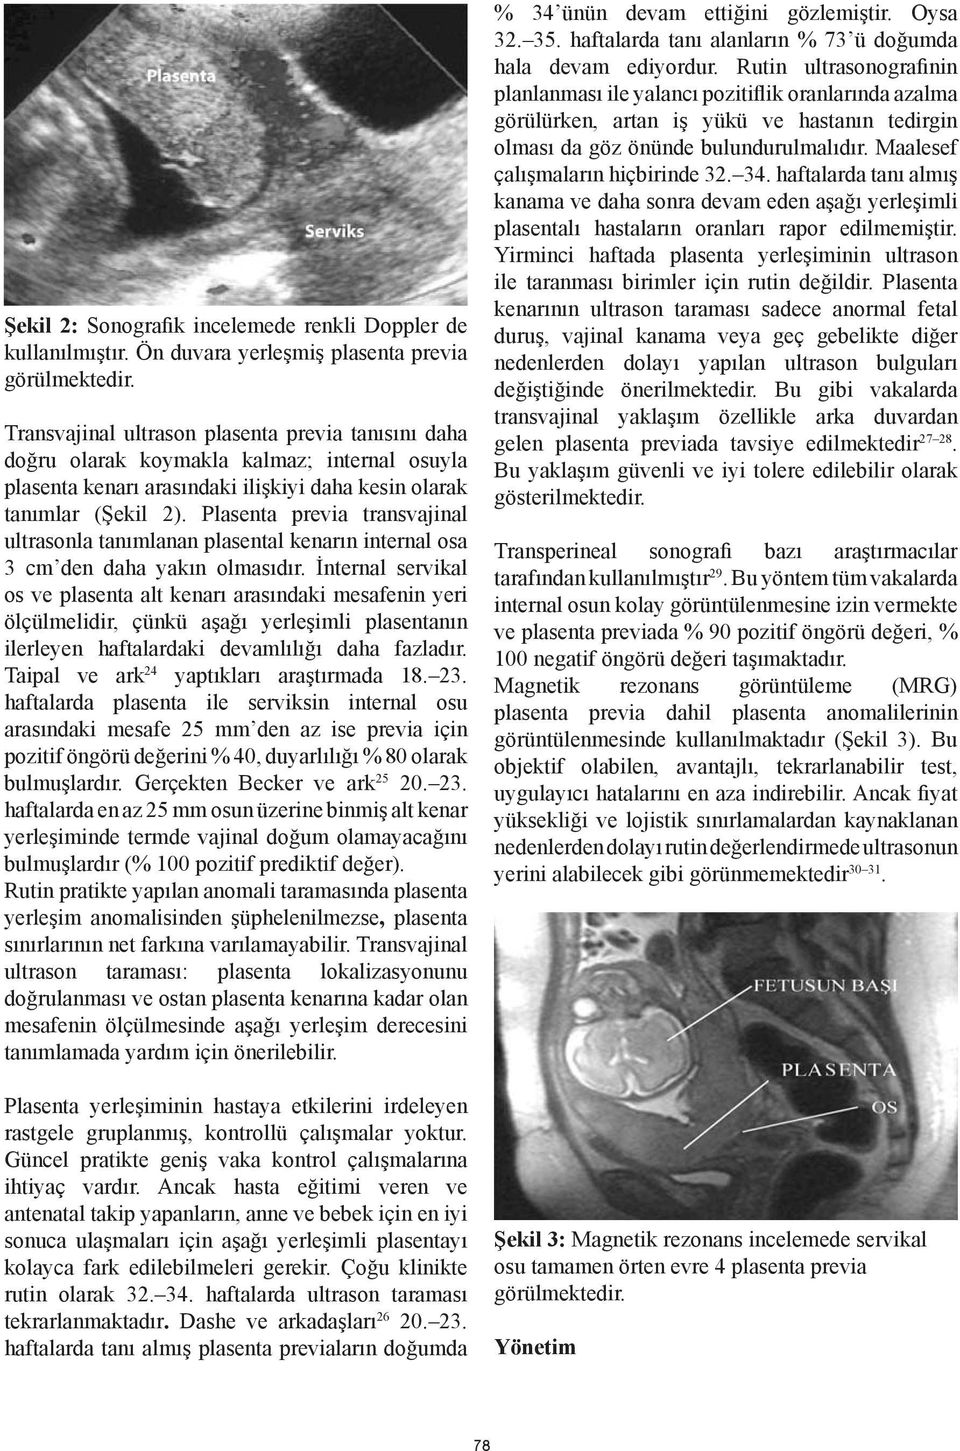 Plasenta previa transvajinal ultrasonla tanımlanan plasental kenarın internal osa 3 cm den daha yakın olmasıdır.